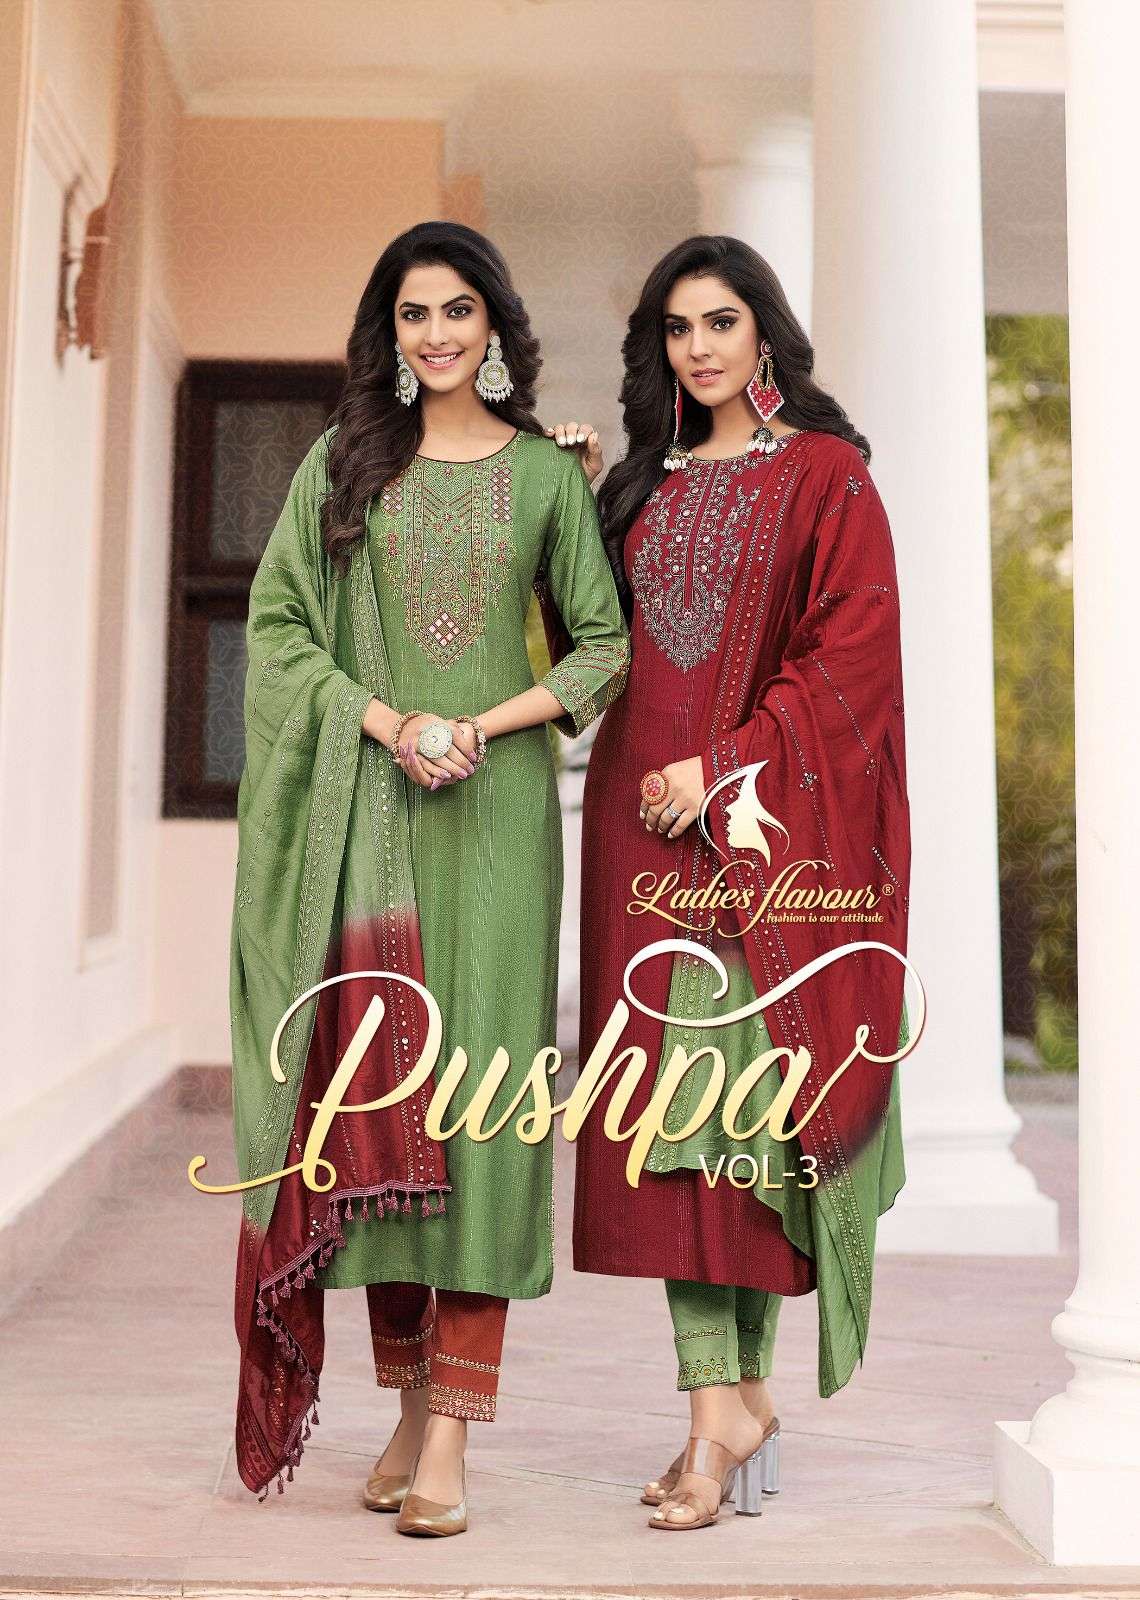 Ladies Flavour Pushpa Vol 3 Kurti Wholesale catalog